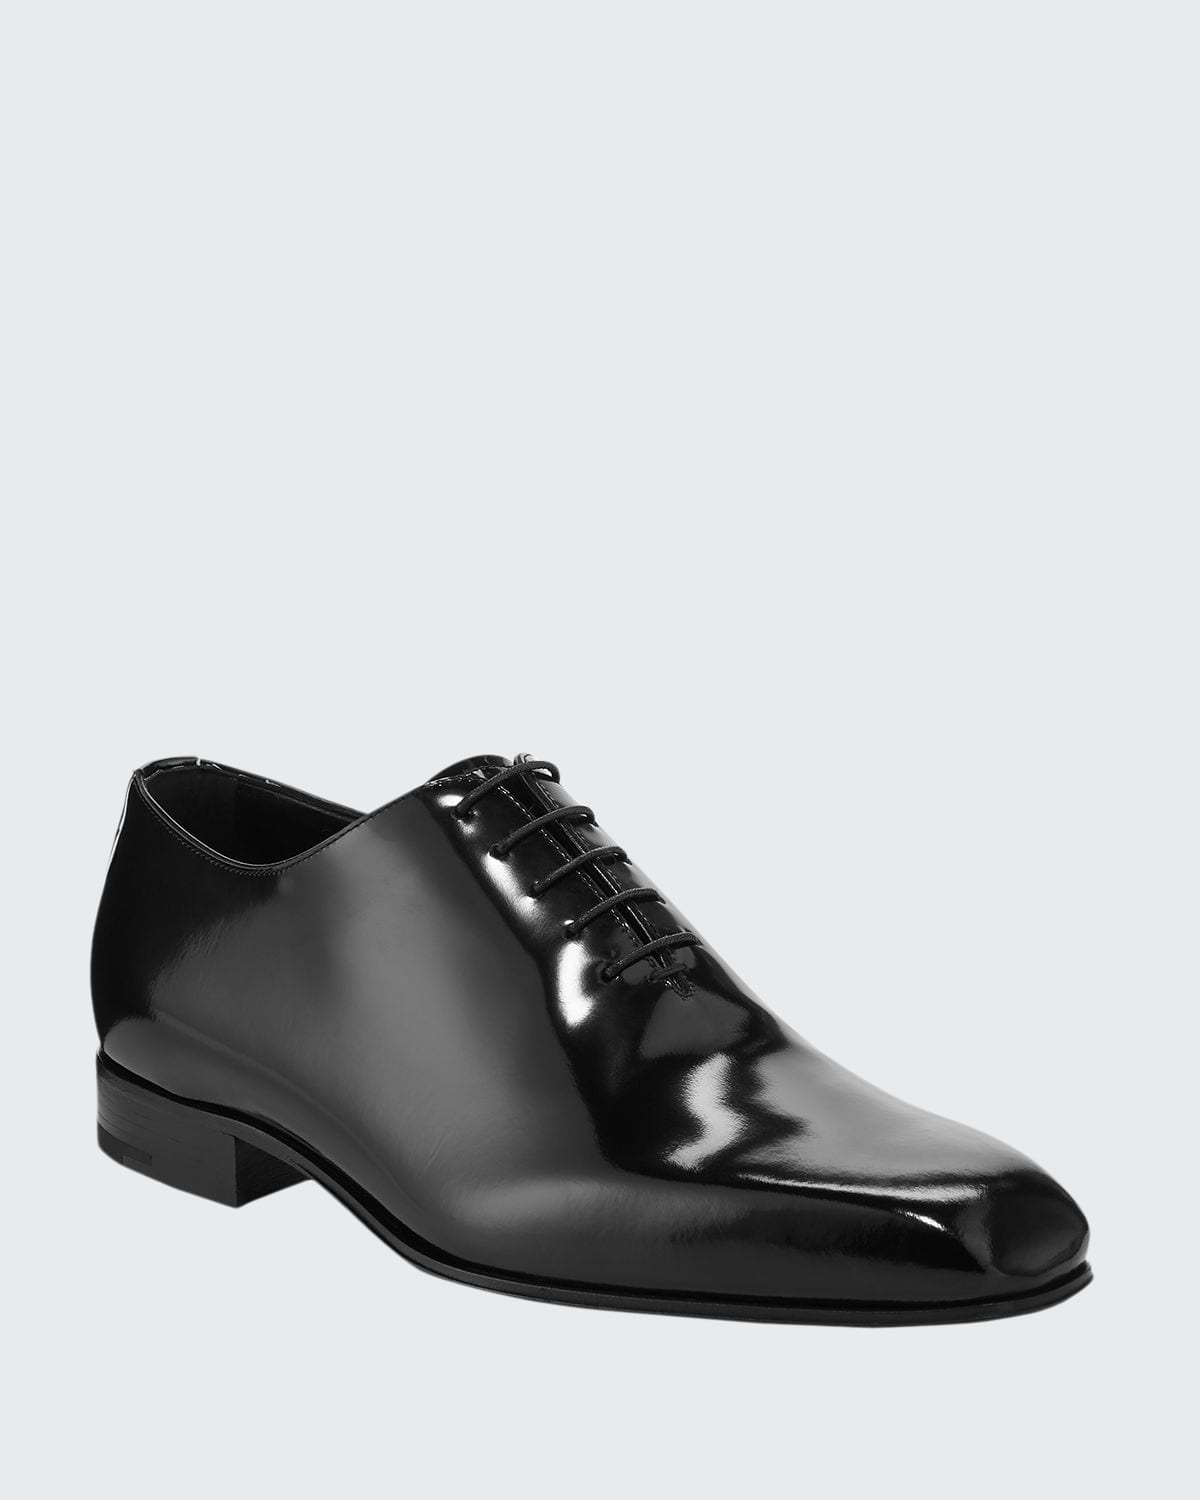 ZEGNA Men's Monte Carlo Whole-Cut Spazzolato Leather Oxford Shoes | Smart  Closet